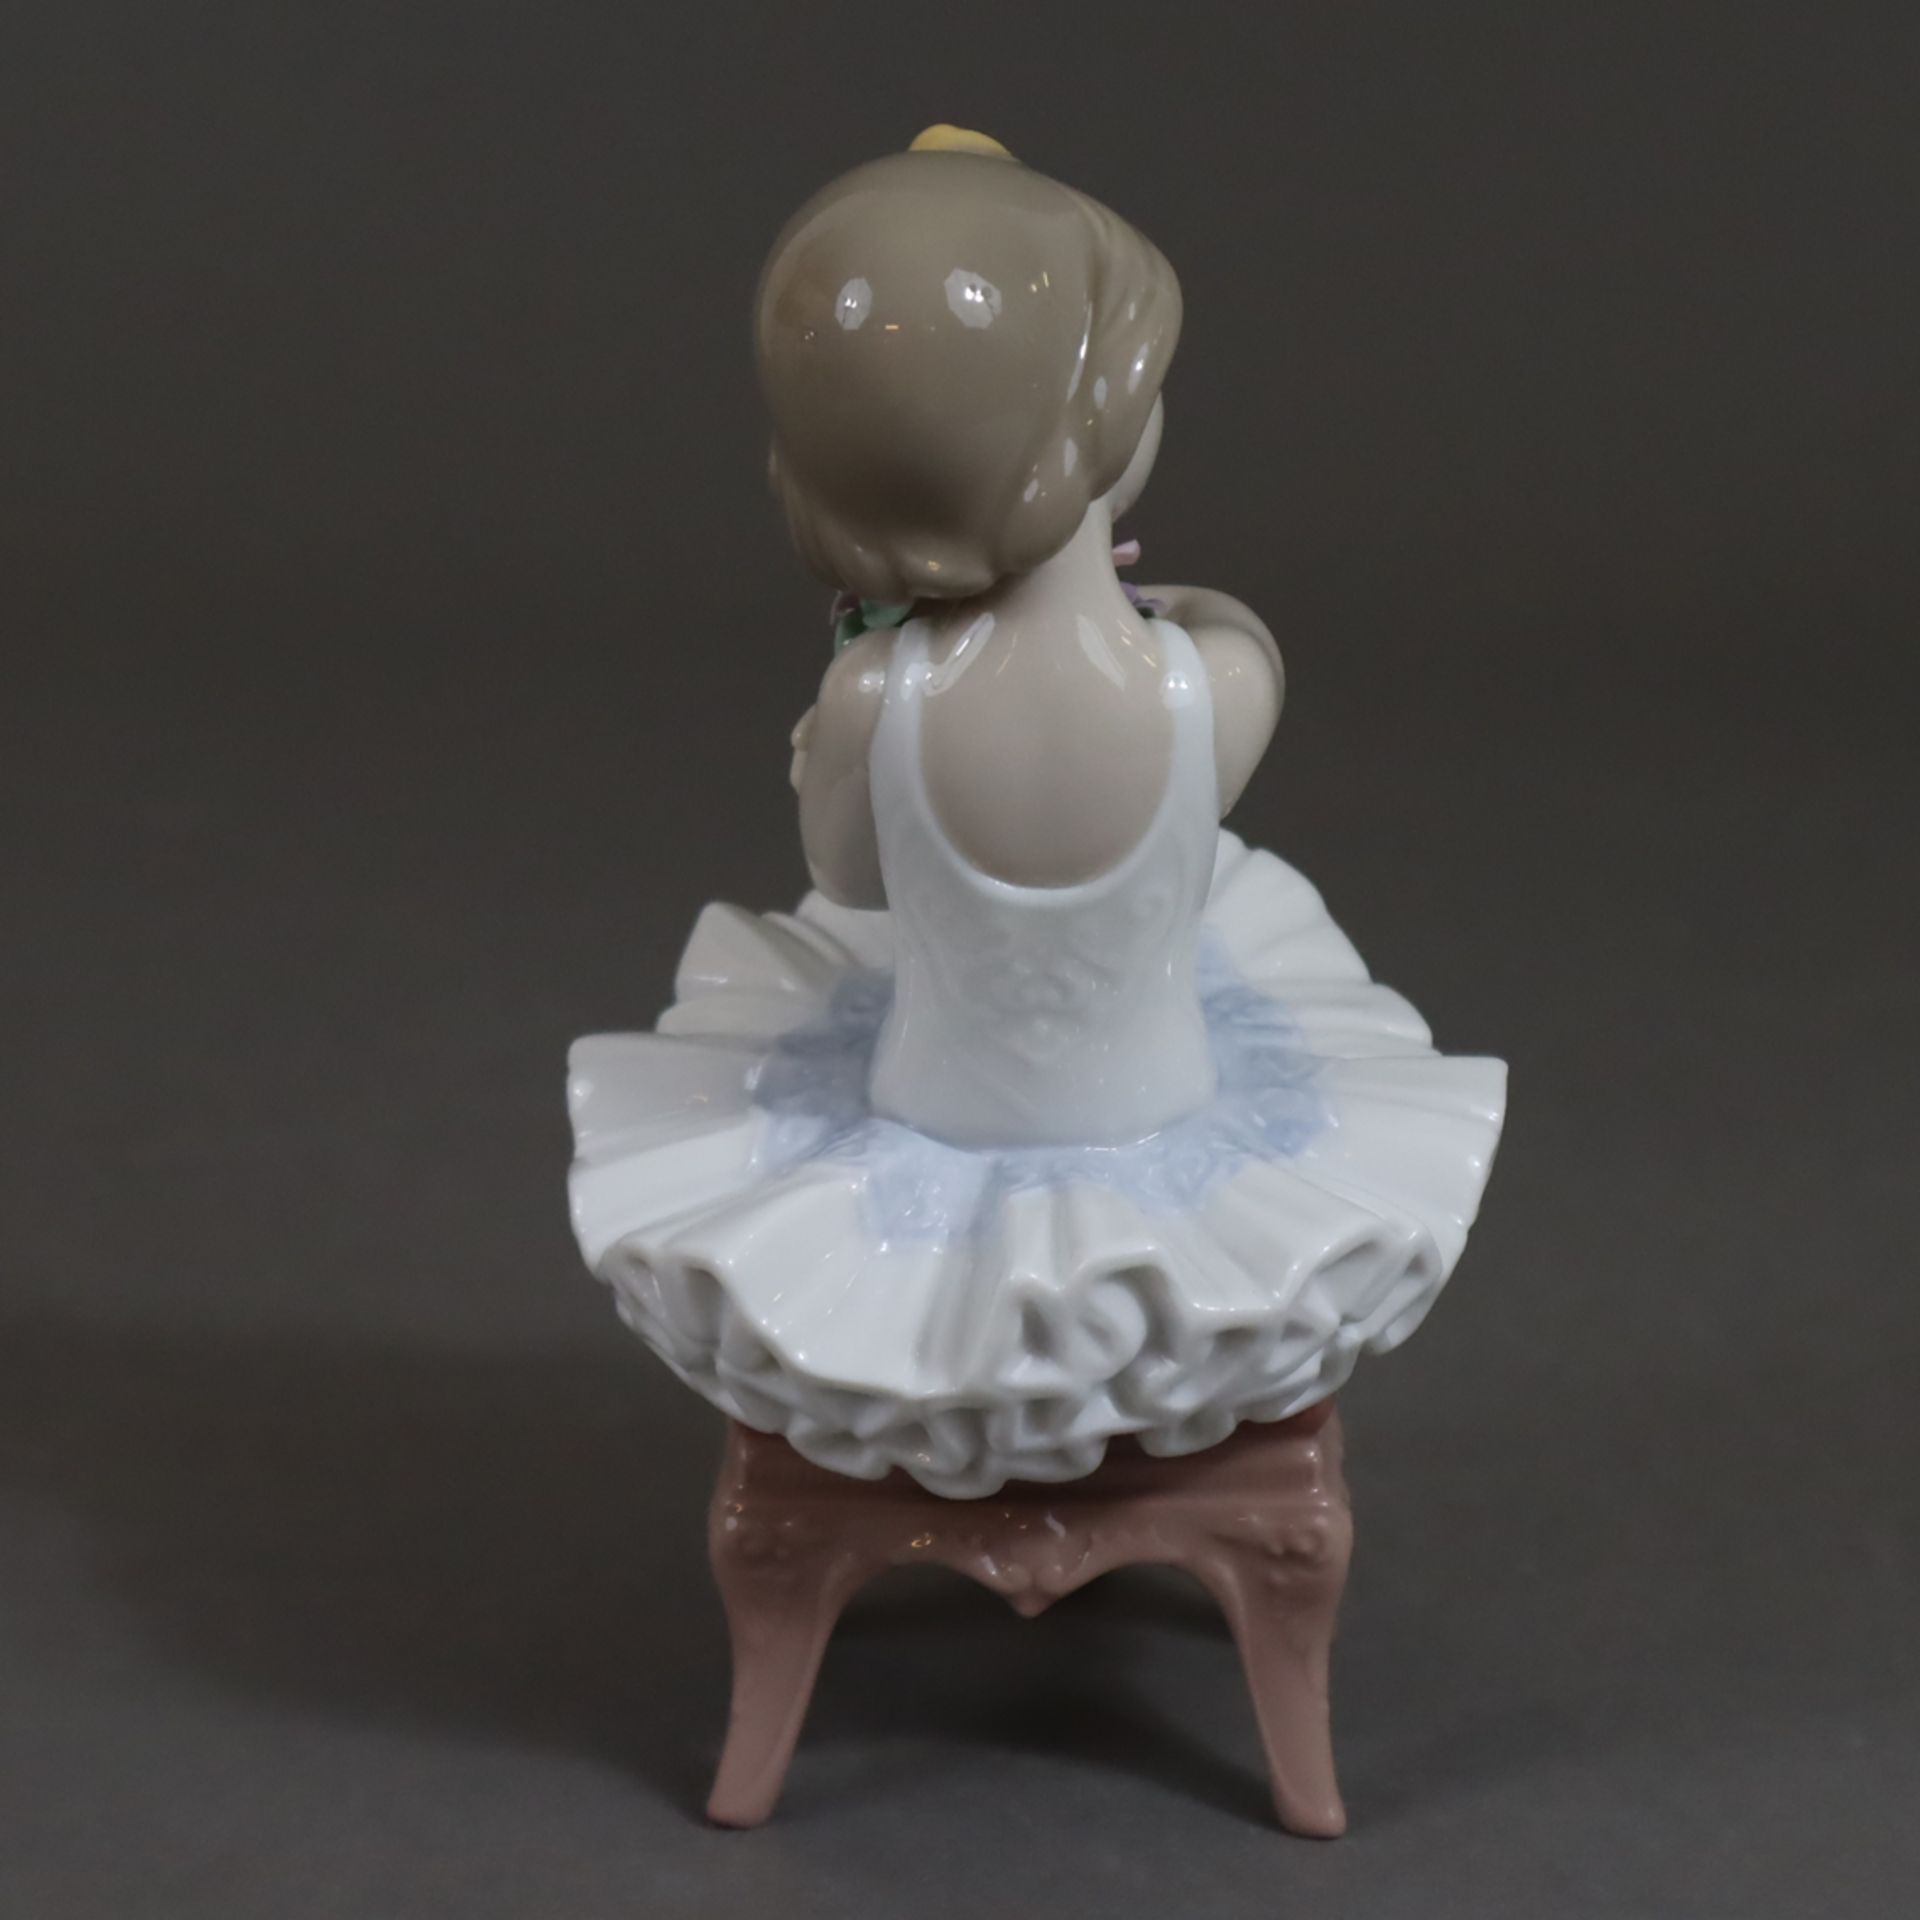 Kinderfigur "Erster Auftritt" - Lladro, Spanien, Modellnr. 6763, Entwurf von Miguel Angel Santaeula - Bild 3 aus 11